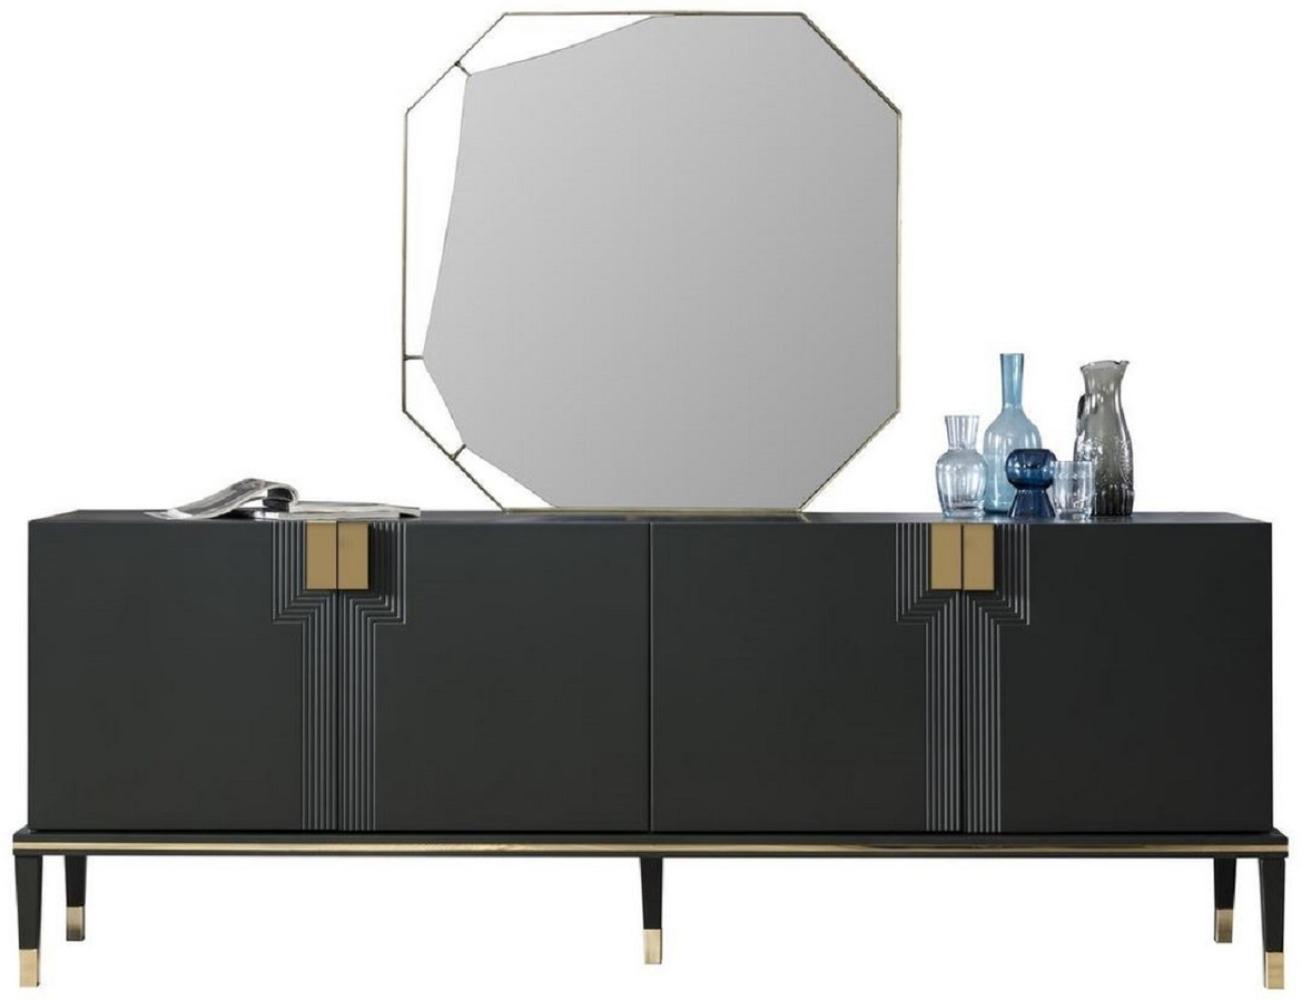 Casa Padrino Luxus Möbel Set Schwarz / Gold - 1 Sideboard mit 4 Türen & 1 Spiegel - Moderne Massivholz Möbel - Luxus Kollektion Bild 1